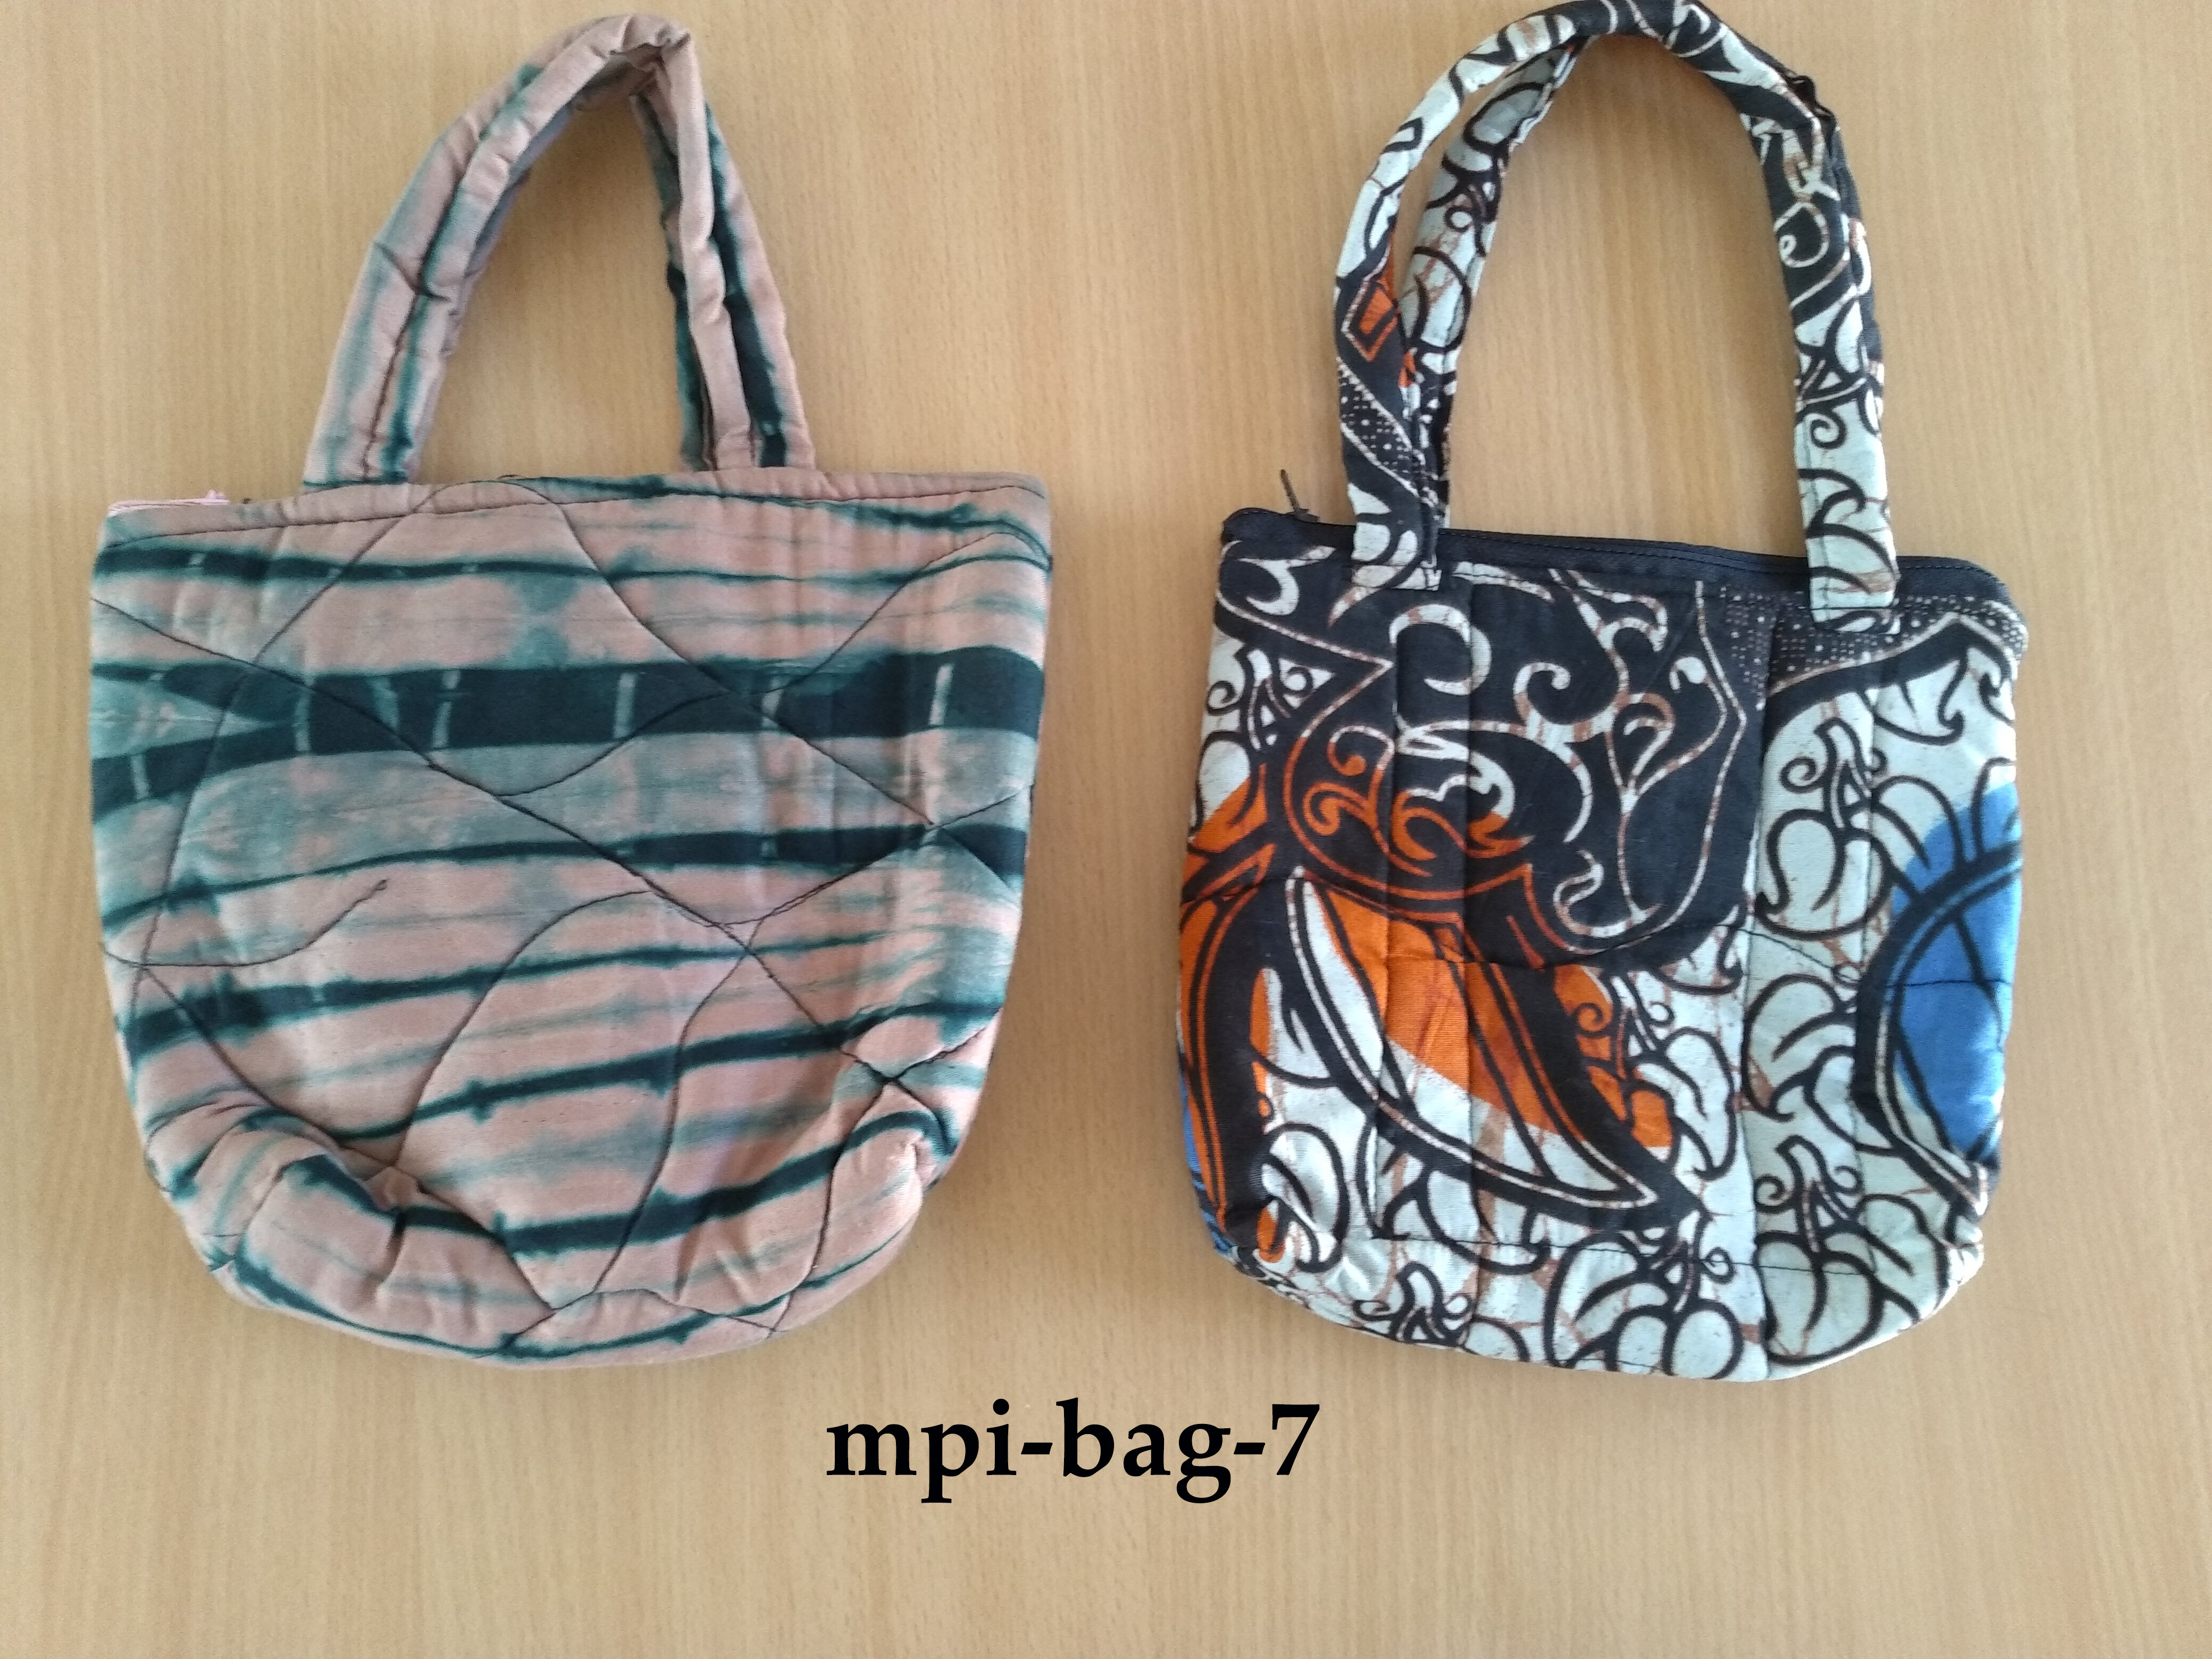 Kitenge Small Hand Bag (Mpi-bag-7)